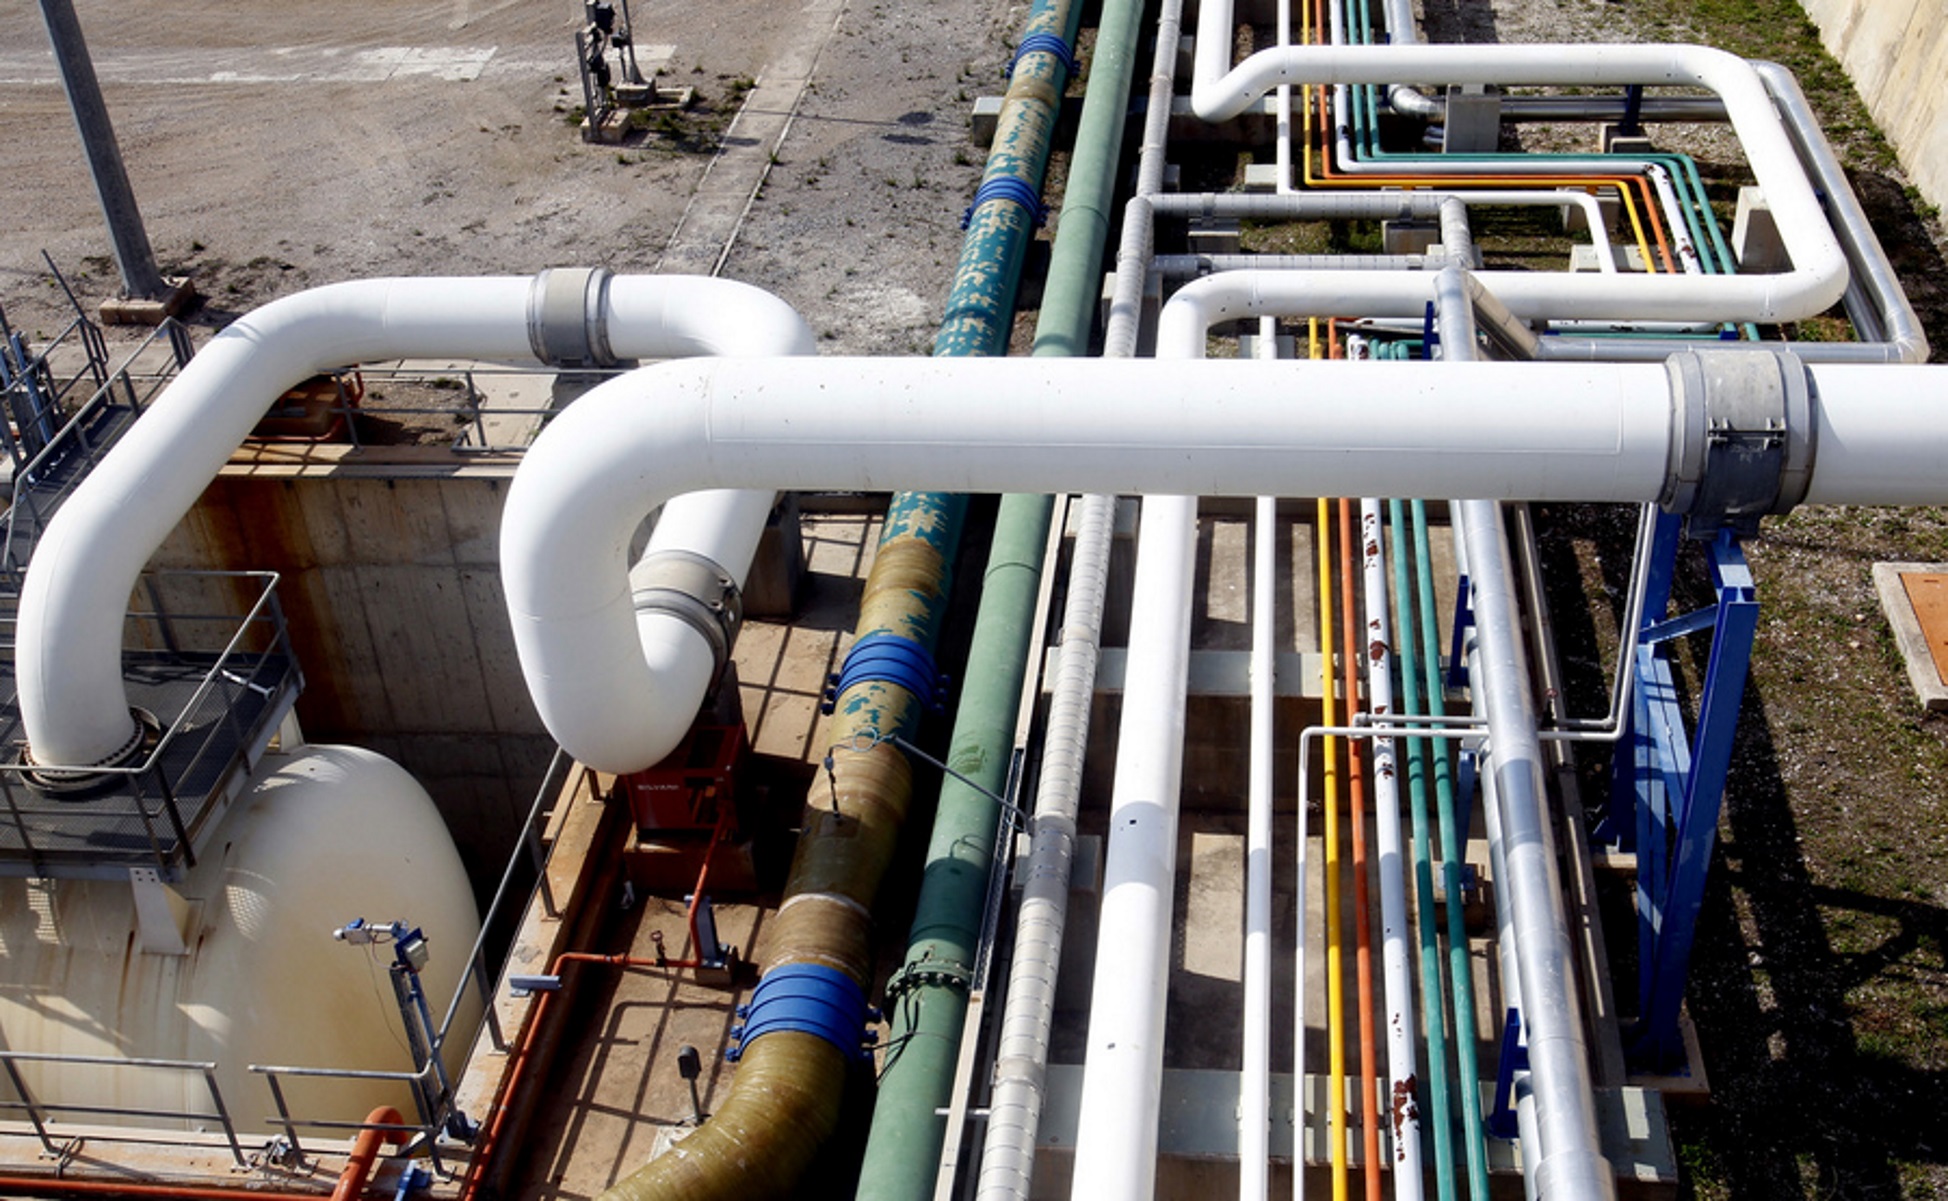 ΡΑΕ: Σε ποιες βιομηχανίες θα διακόπτεται η παροχή φυσικού αερίου σε περίπτωση κρίσης - NewsIT